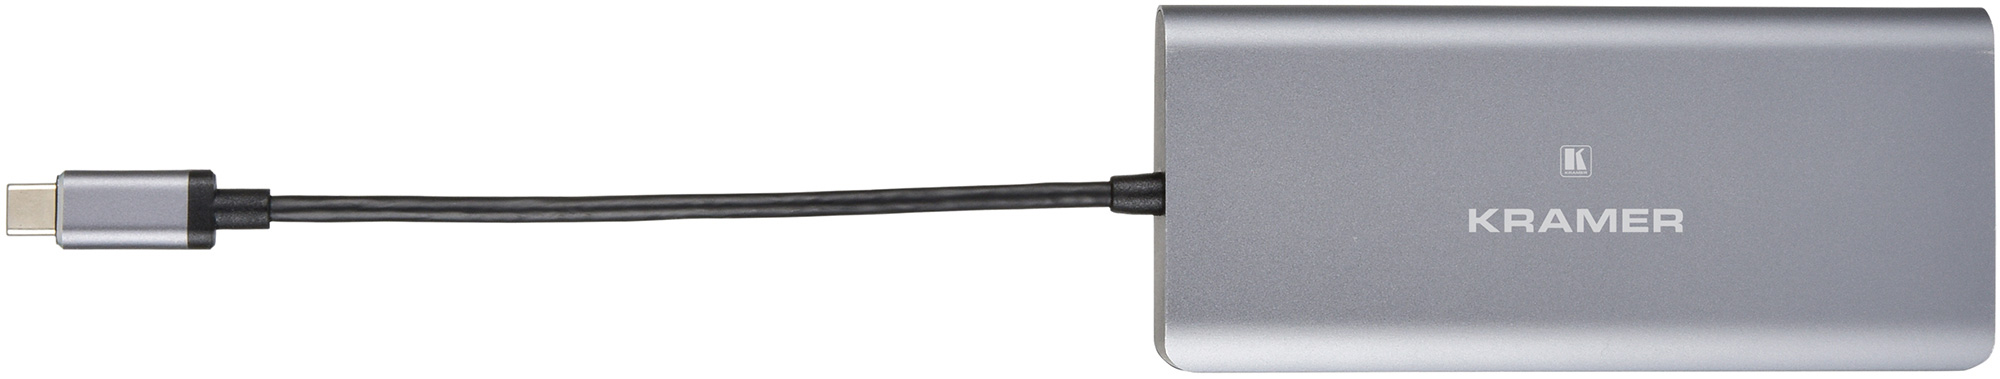 Kramer KDOCK-2 USB-C 3.0 Hub Multiport Adapter with Data/Charging & Ethernet KDOCK-2